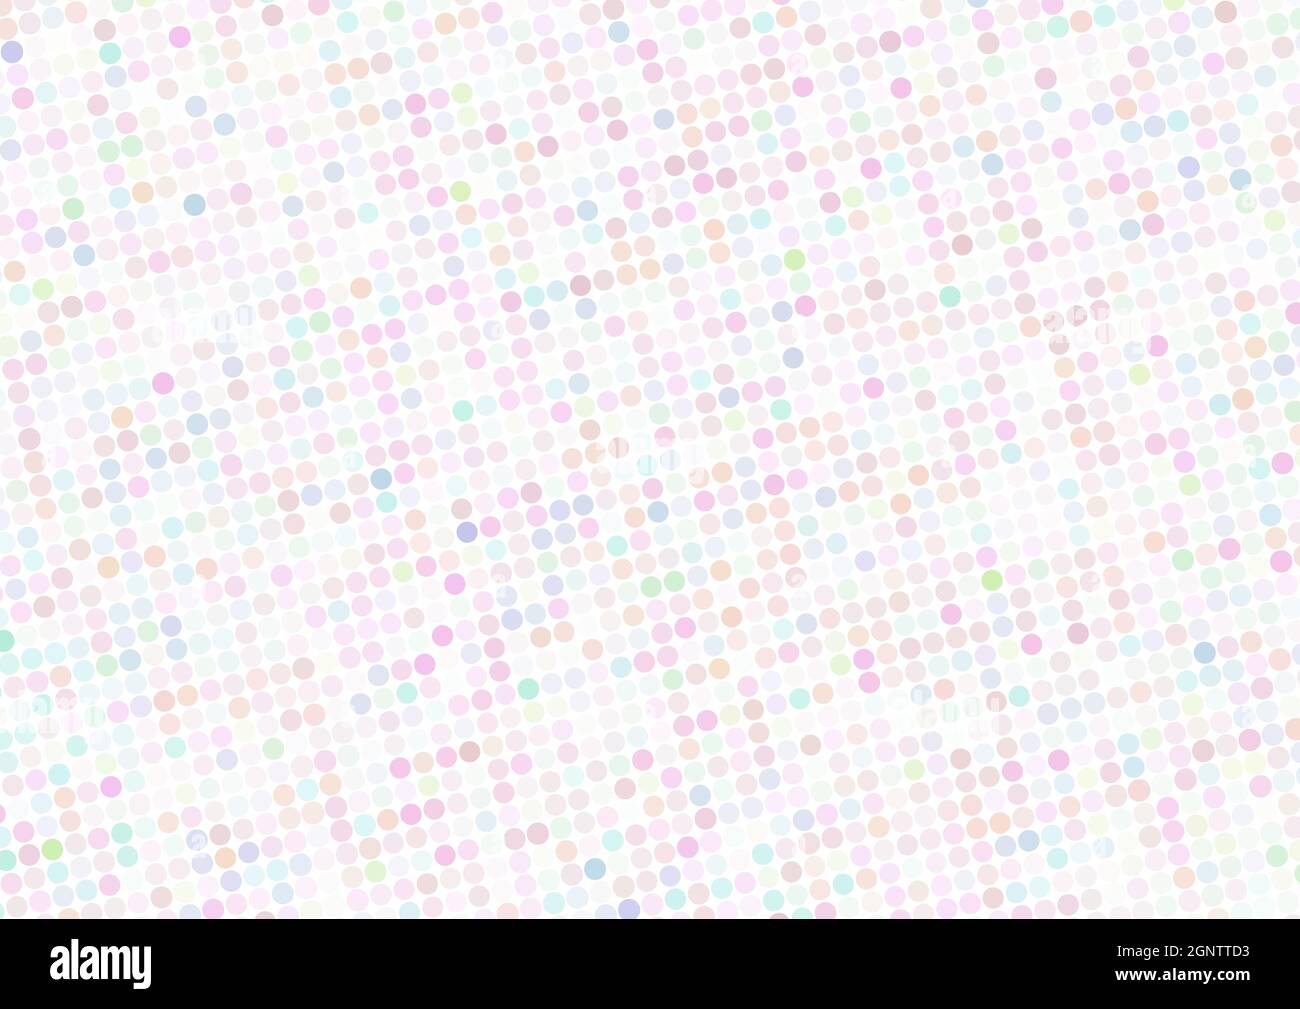 Motivo polkadot multicolore chiaro con punti di colore pastello su un bianco. Grafica vettoriale semplice Illustrazione Vettoriale